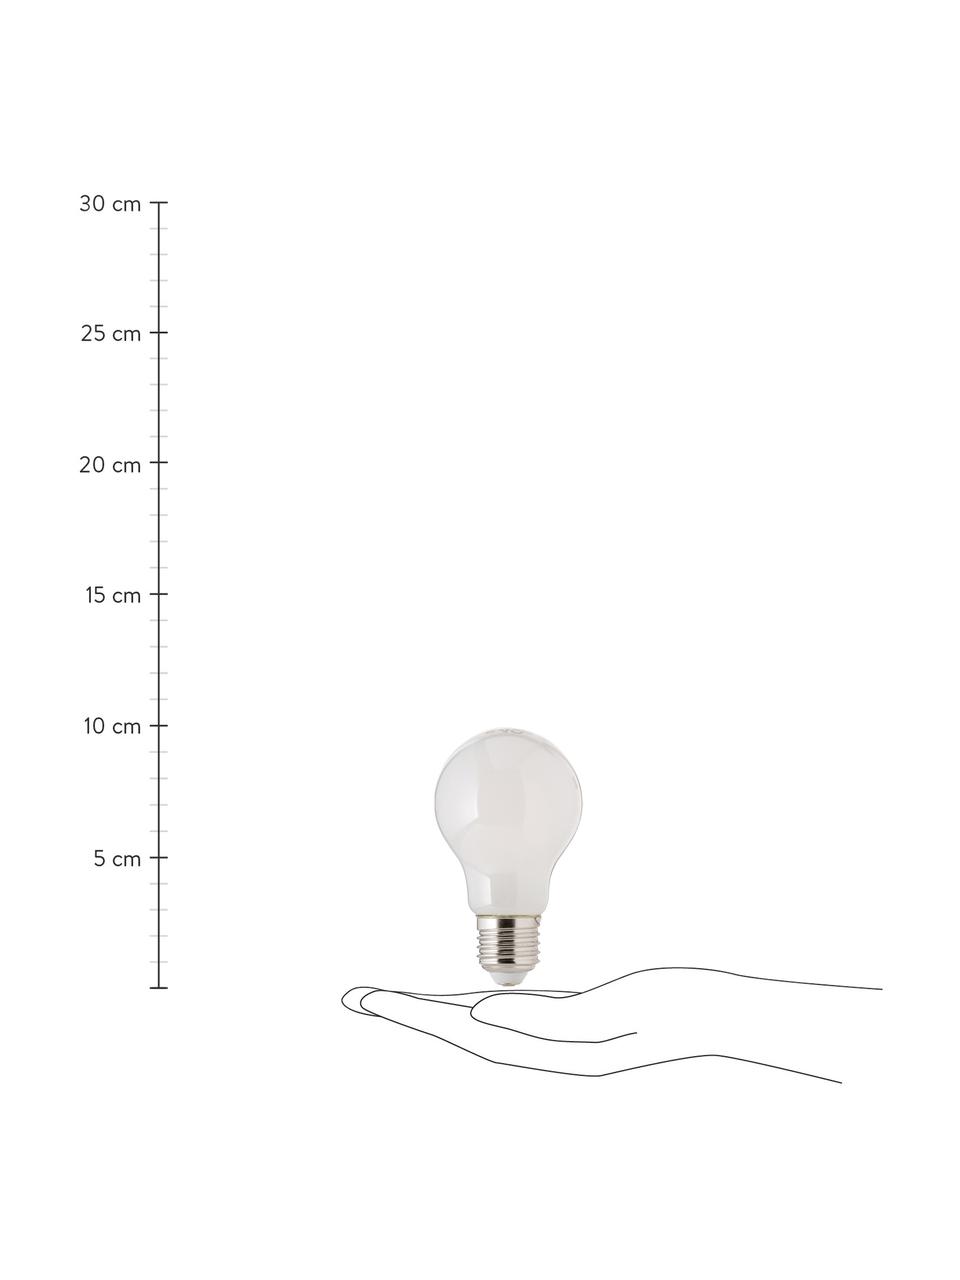 Žárovka E27, 806 lm, stmívatelná, teplá bílá, 1 ks, Bílá, Ø 8 cm, V 10 cm